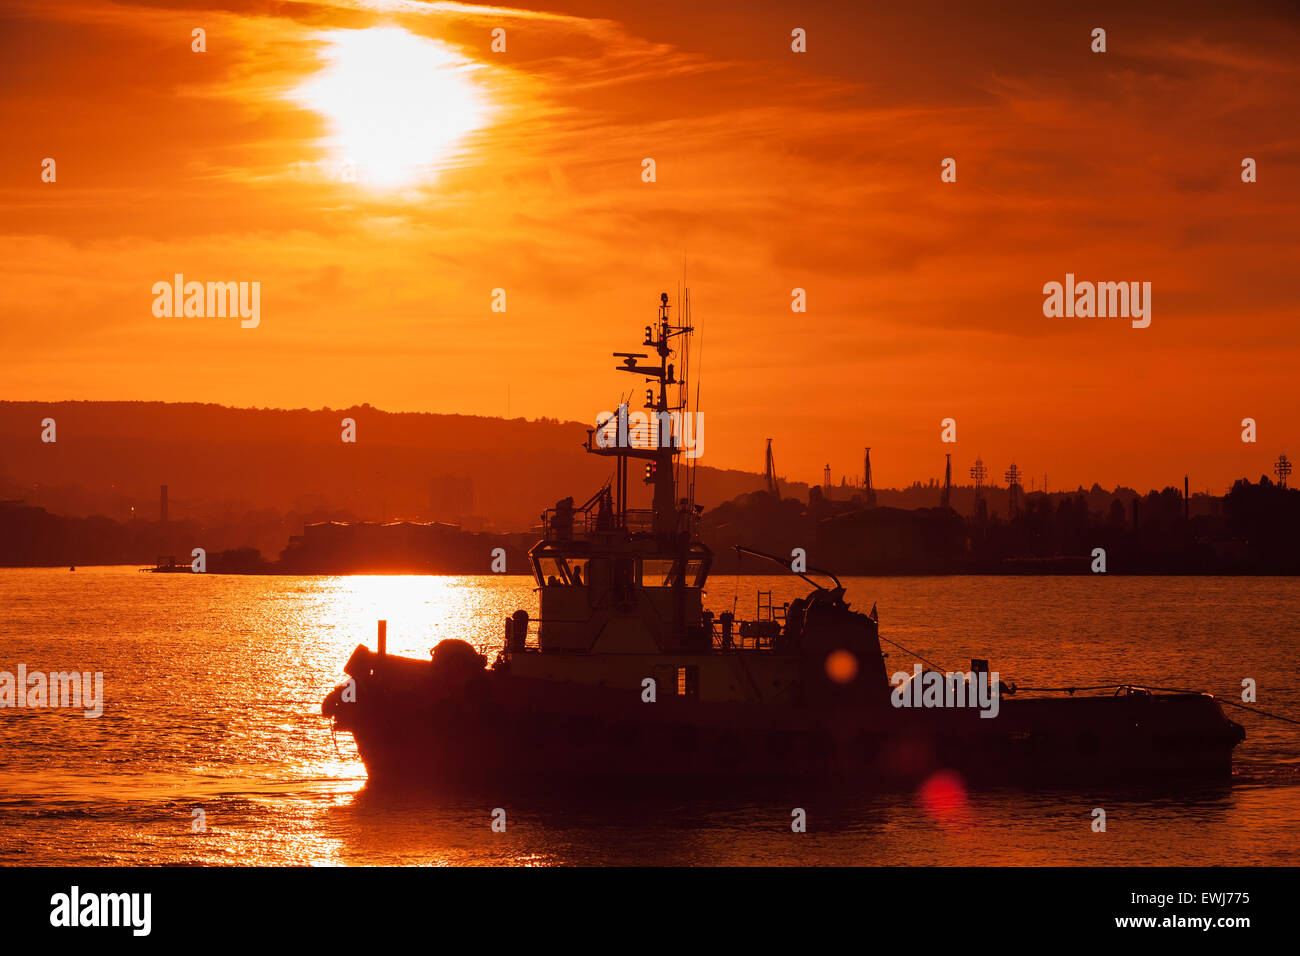 Au coucher du soleil de la mer Noire. Navire remorqueur est en cours, le port de Varna, Bulgarie. Photo avec effet lens flare naturel Banque D'Images